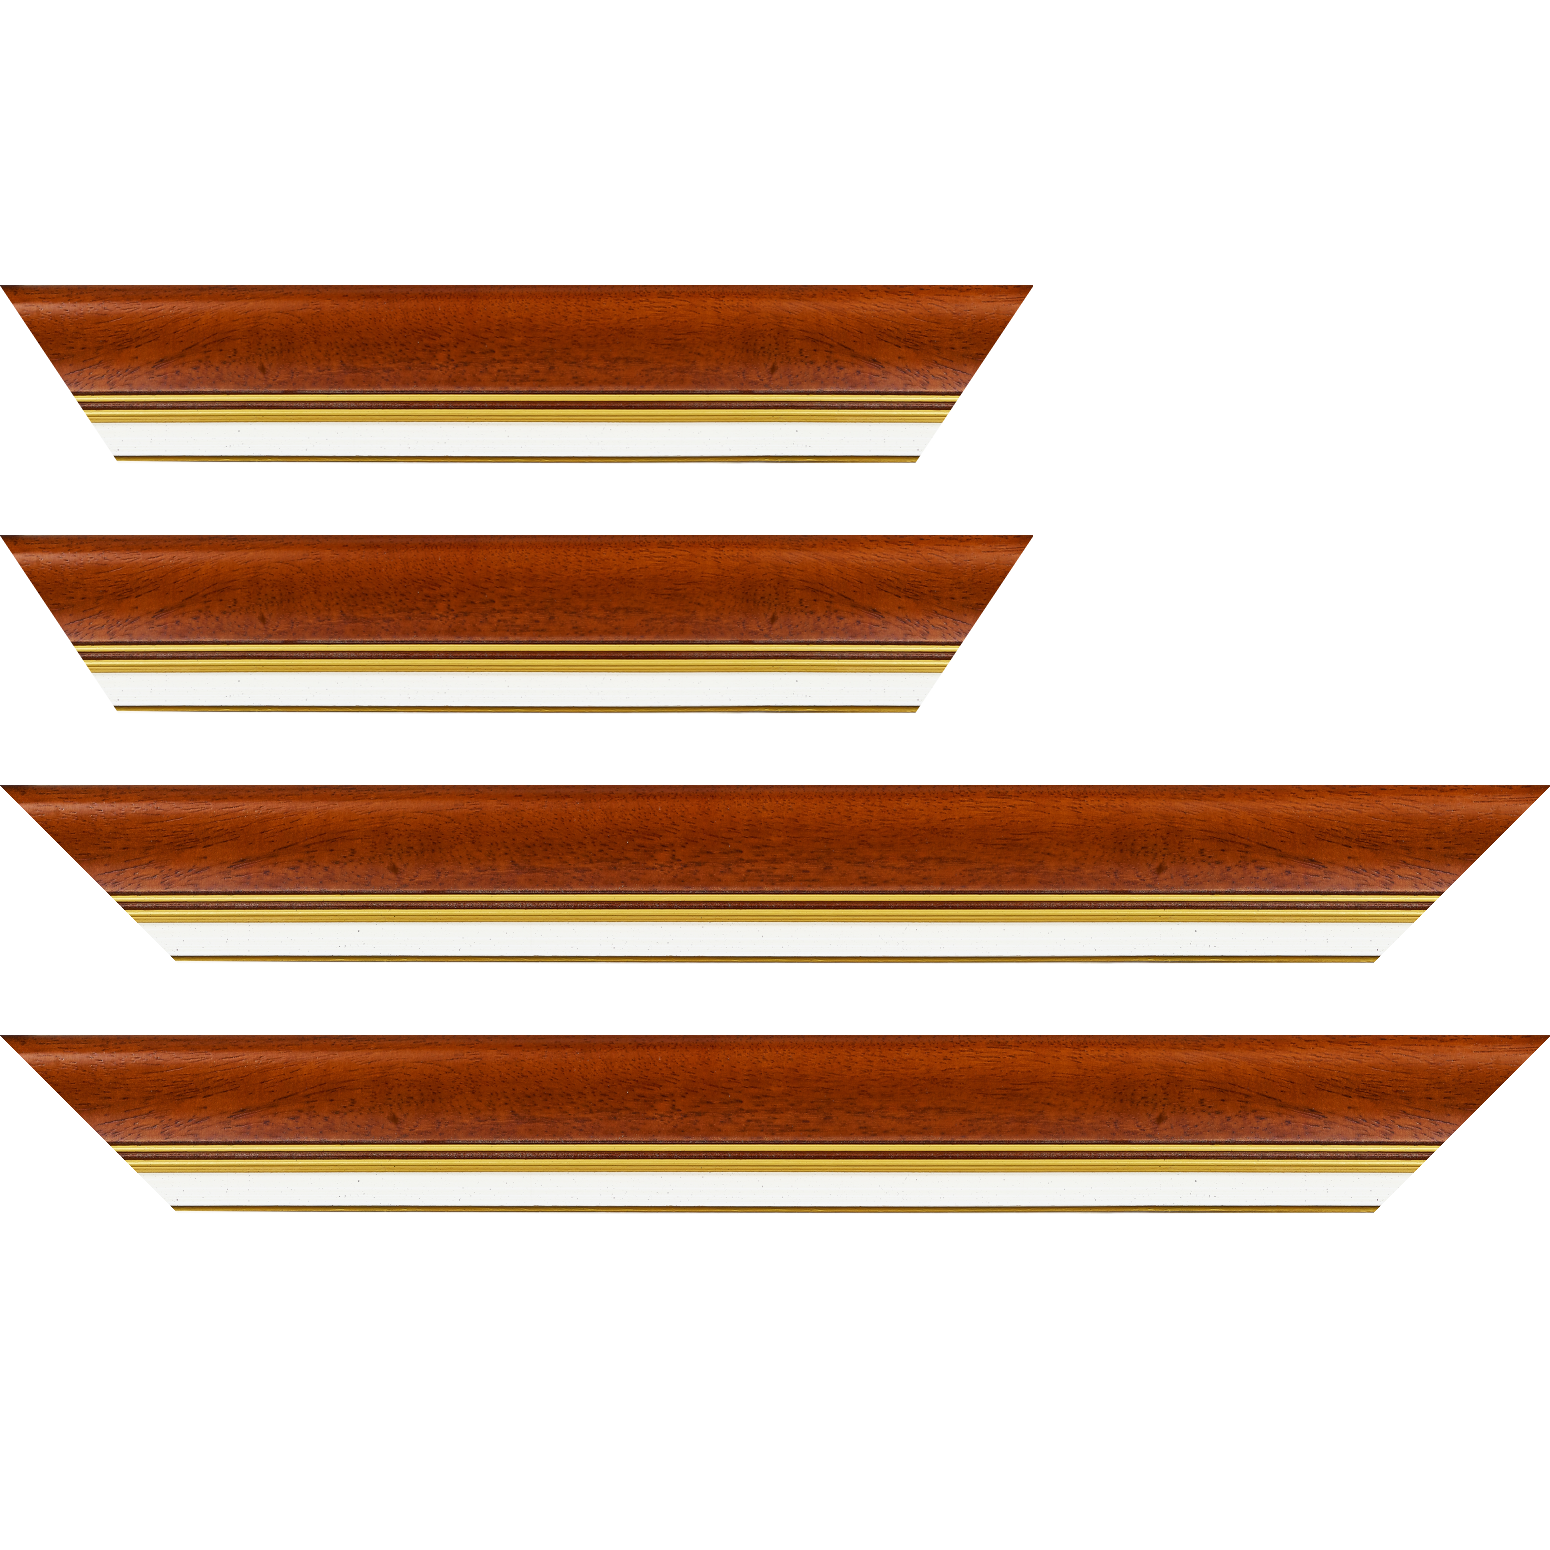 Baguette bois profil incurvé largeur 5.7cm de couleur marron ton bois marie louise blanche mouchetée filet or intégré